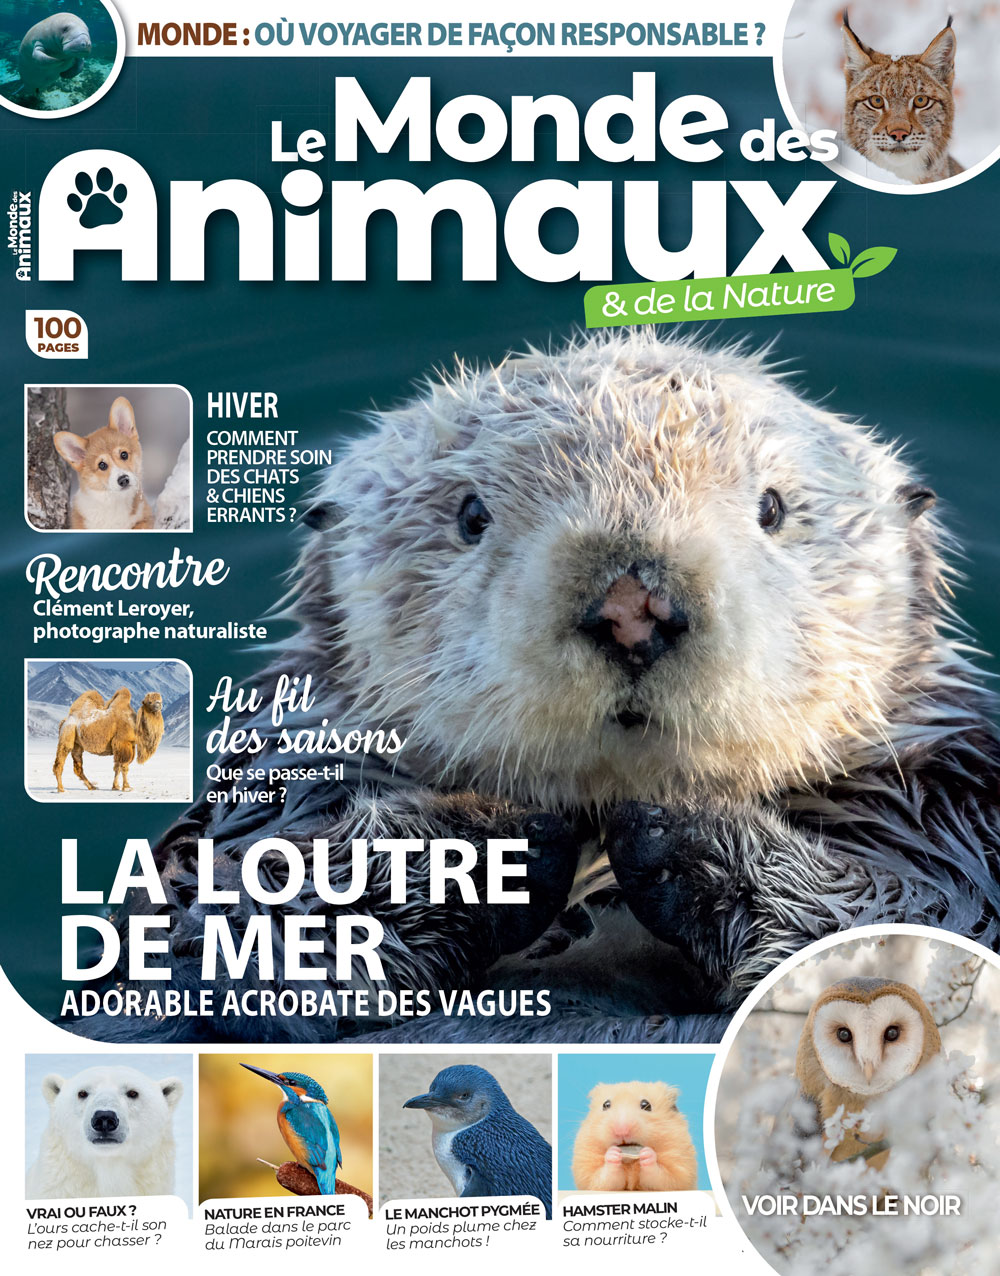 Le Monde des Animaux magazine